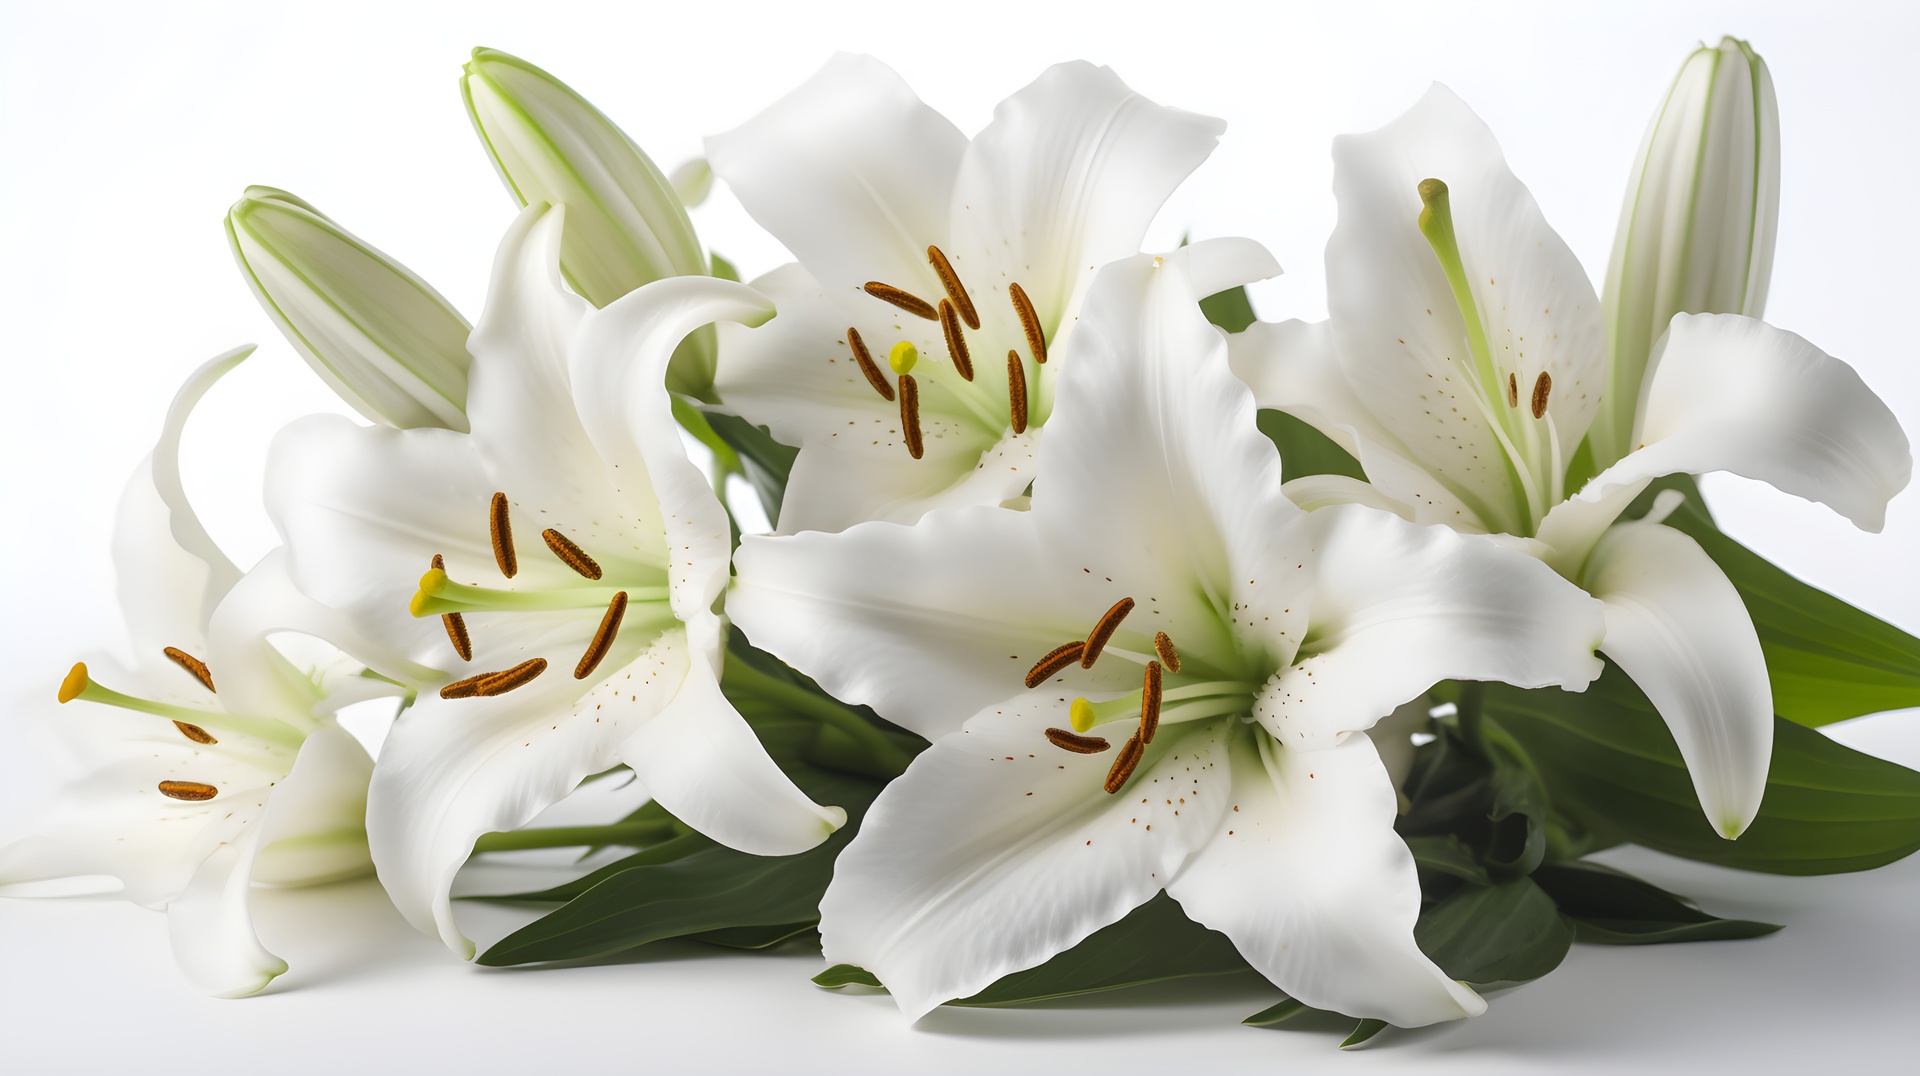 Na tym ujęciu możemy podziwiać eleganckie białe lilie, które są kwintesencją delikatności i piękna. Kwiaty o nieskazitelnym białym kolorze przyciągają uwagę swoją prostotą i czystością. Ich płatki, delikatnie rozchylone, ukazują subtelne tekstury i delikatne łukowate kształty, tworząc wspaniałą kompozycję natury